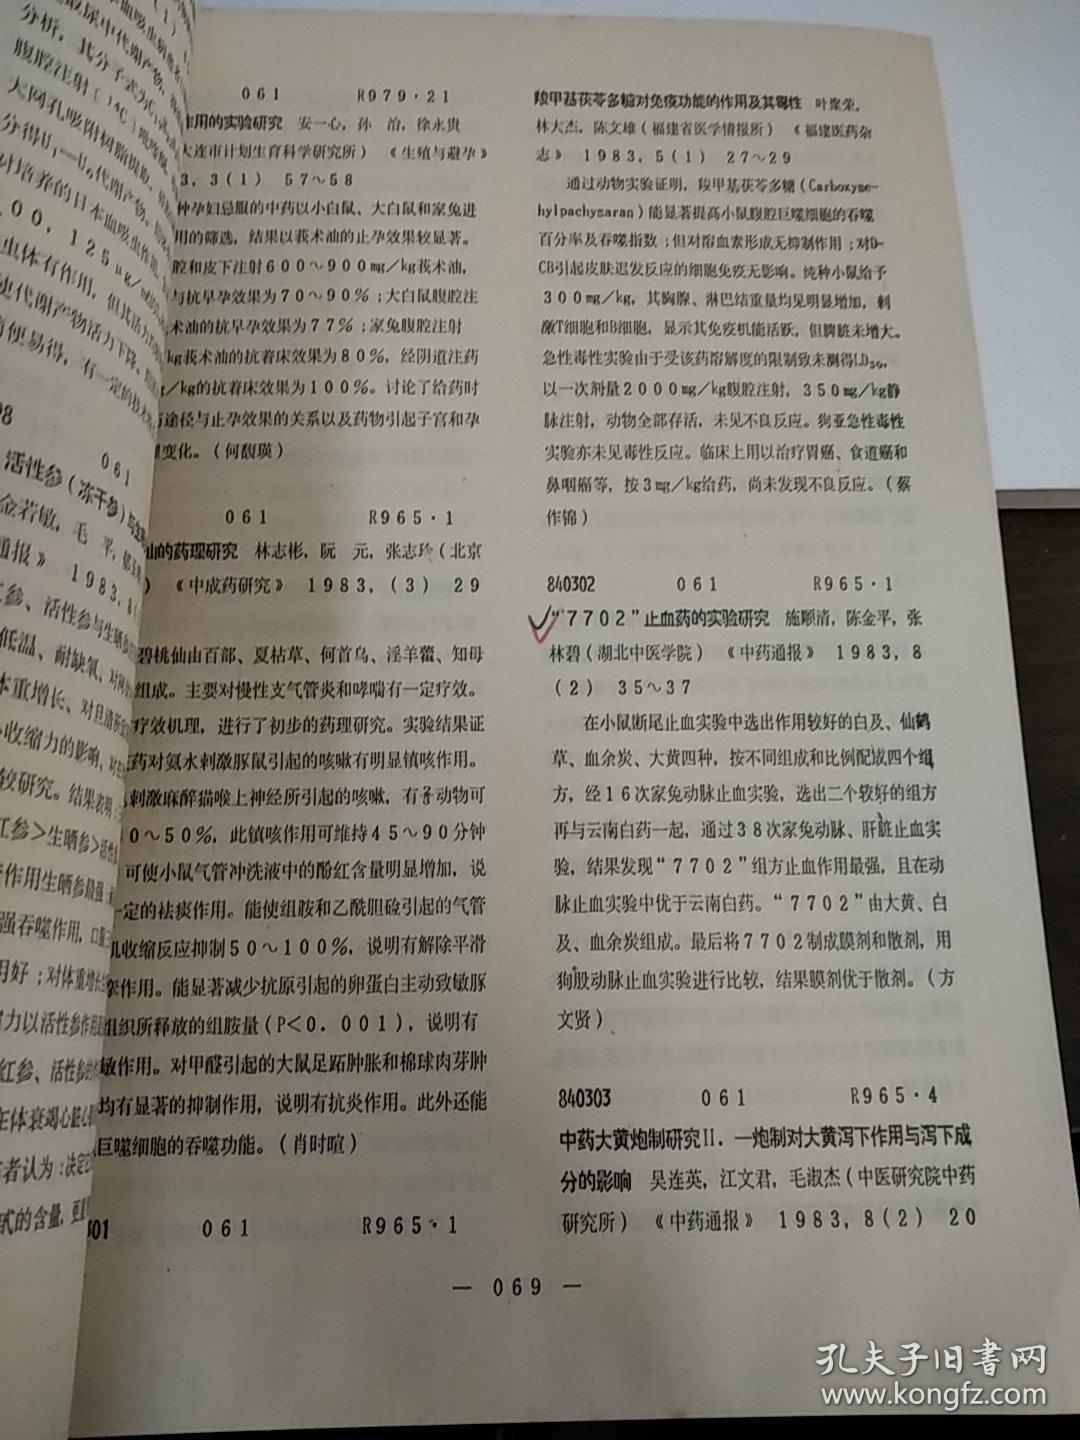 中国药学文摘1984年第一卷第一期